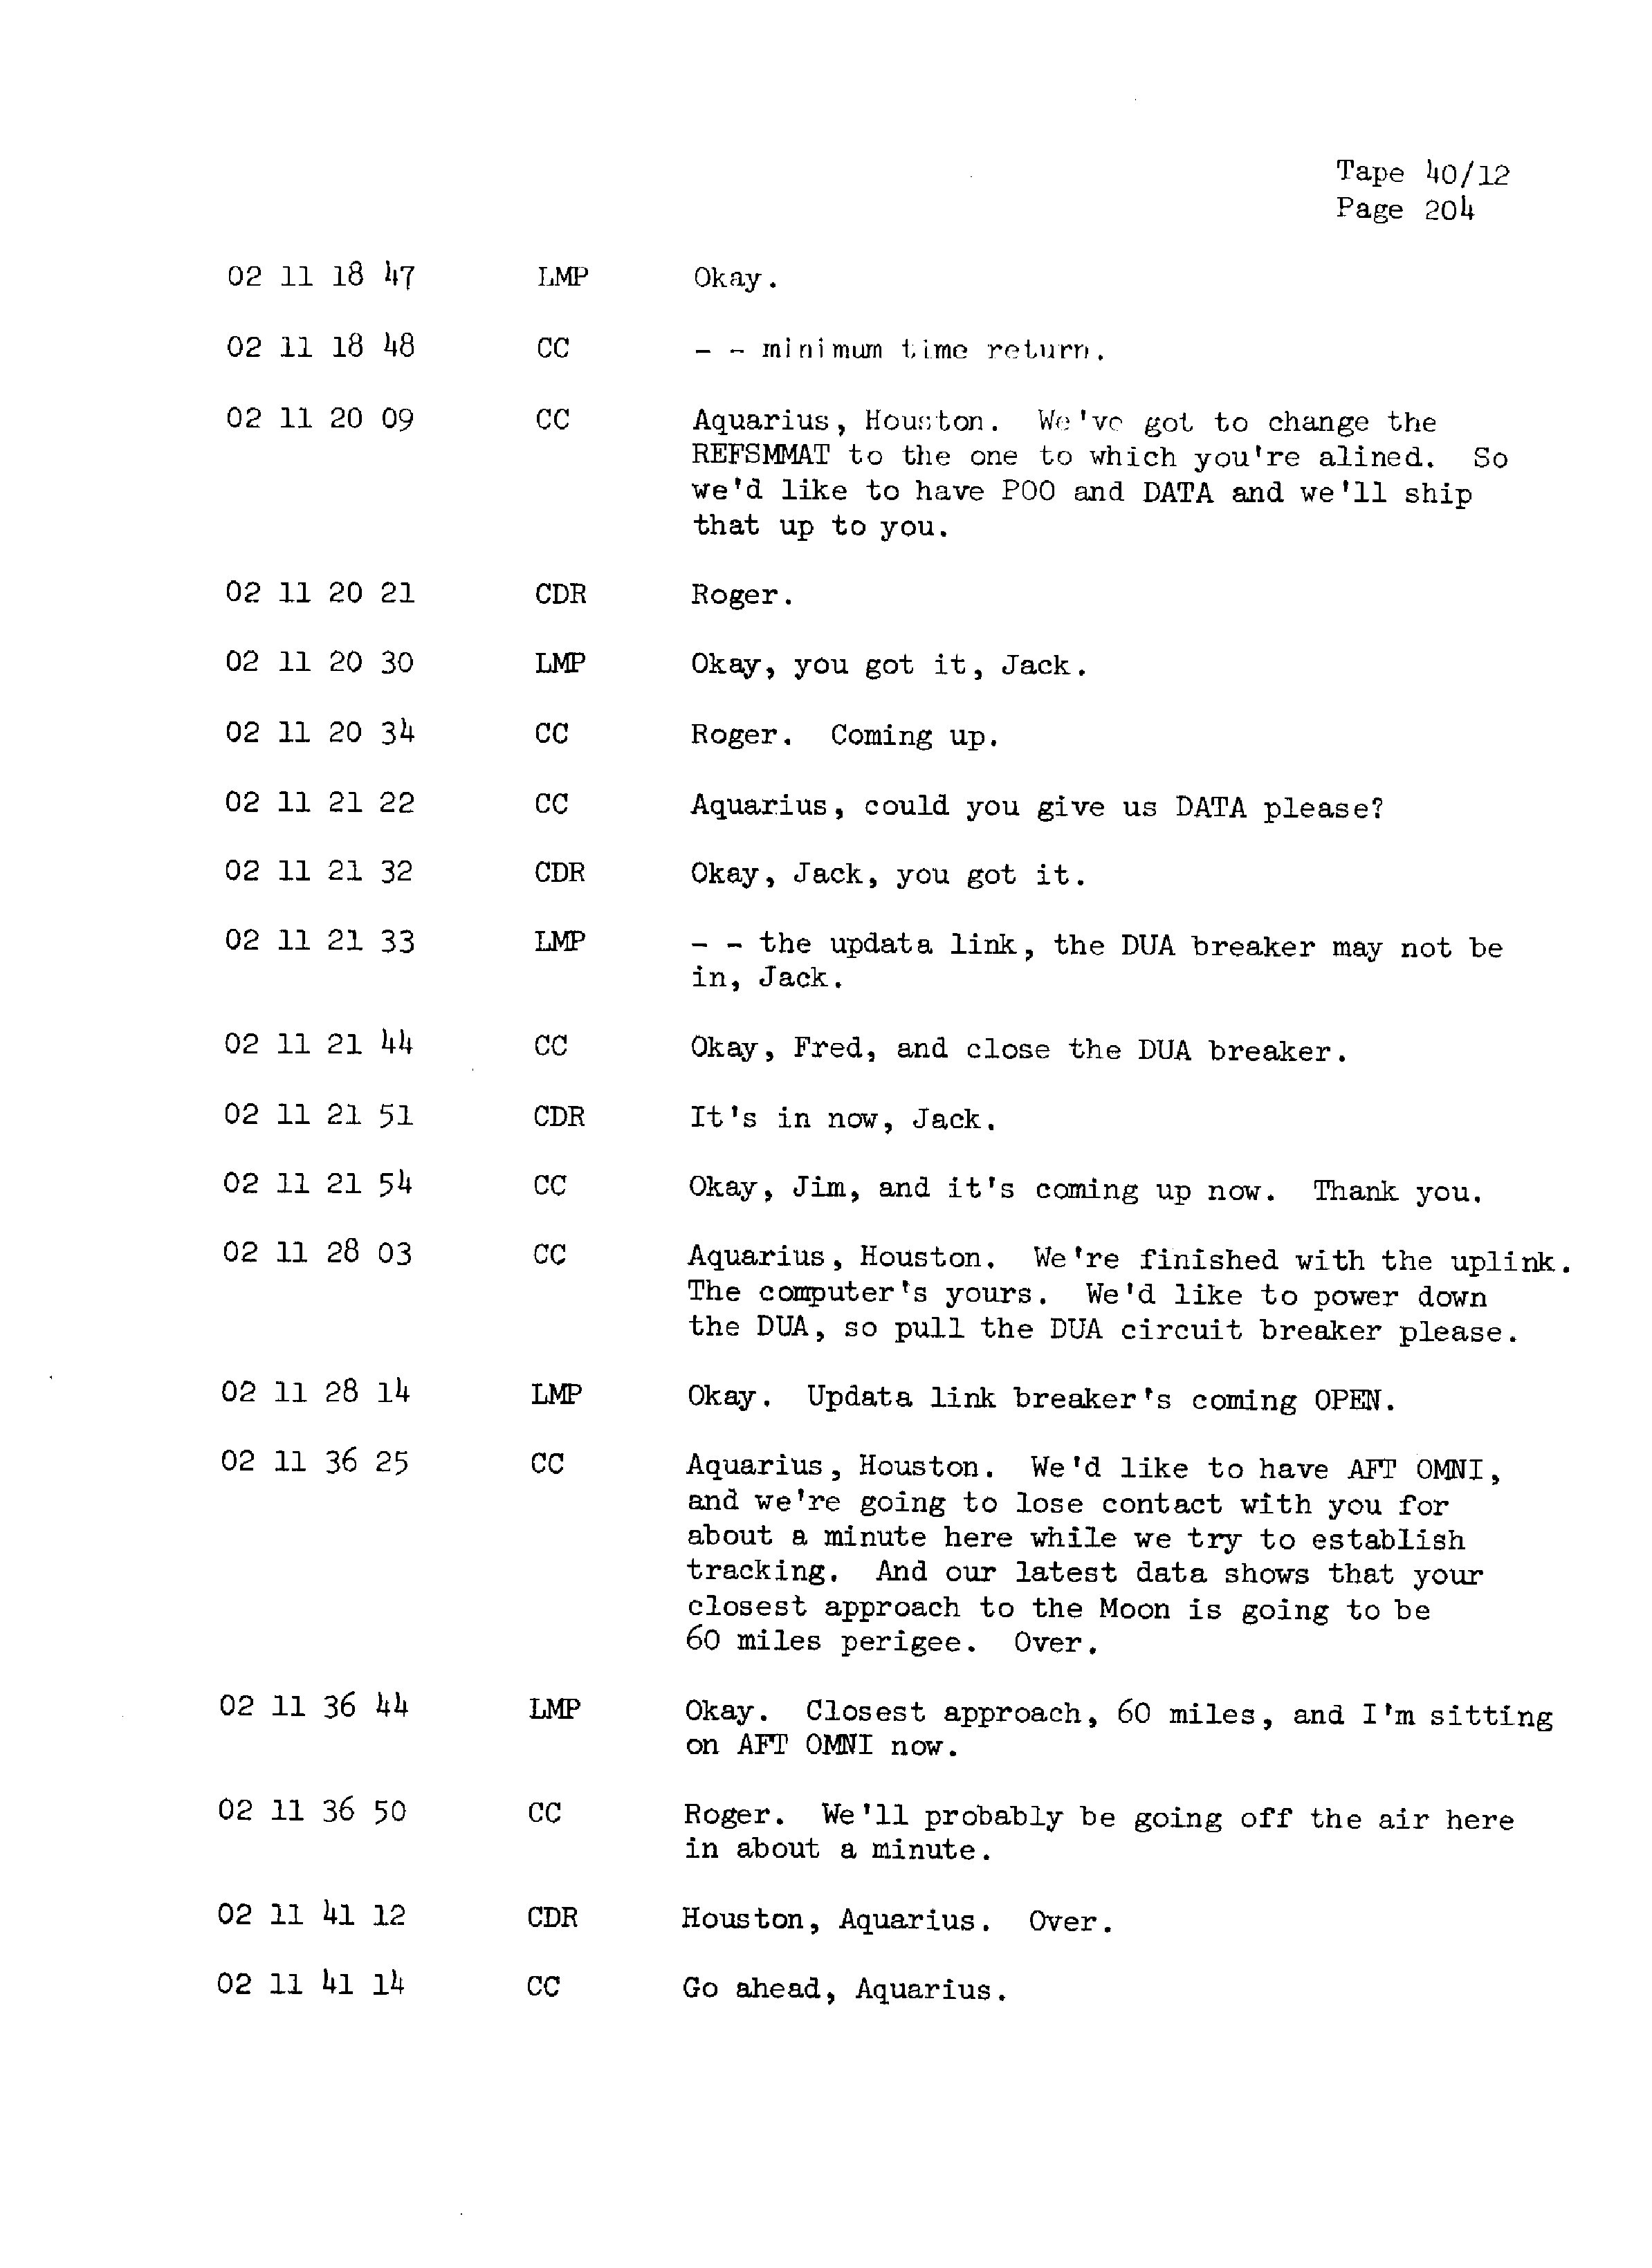 Page 211 of Apollo 13’s original transcript